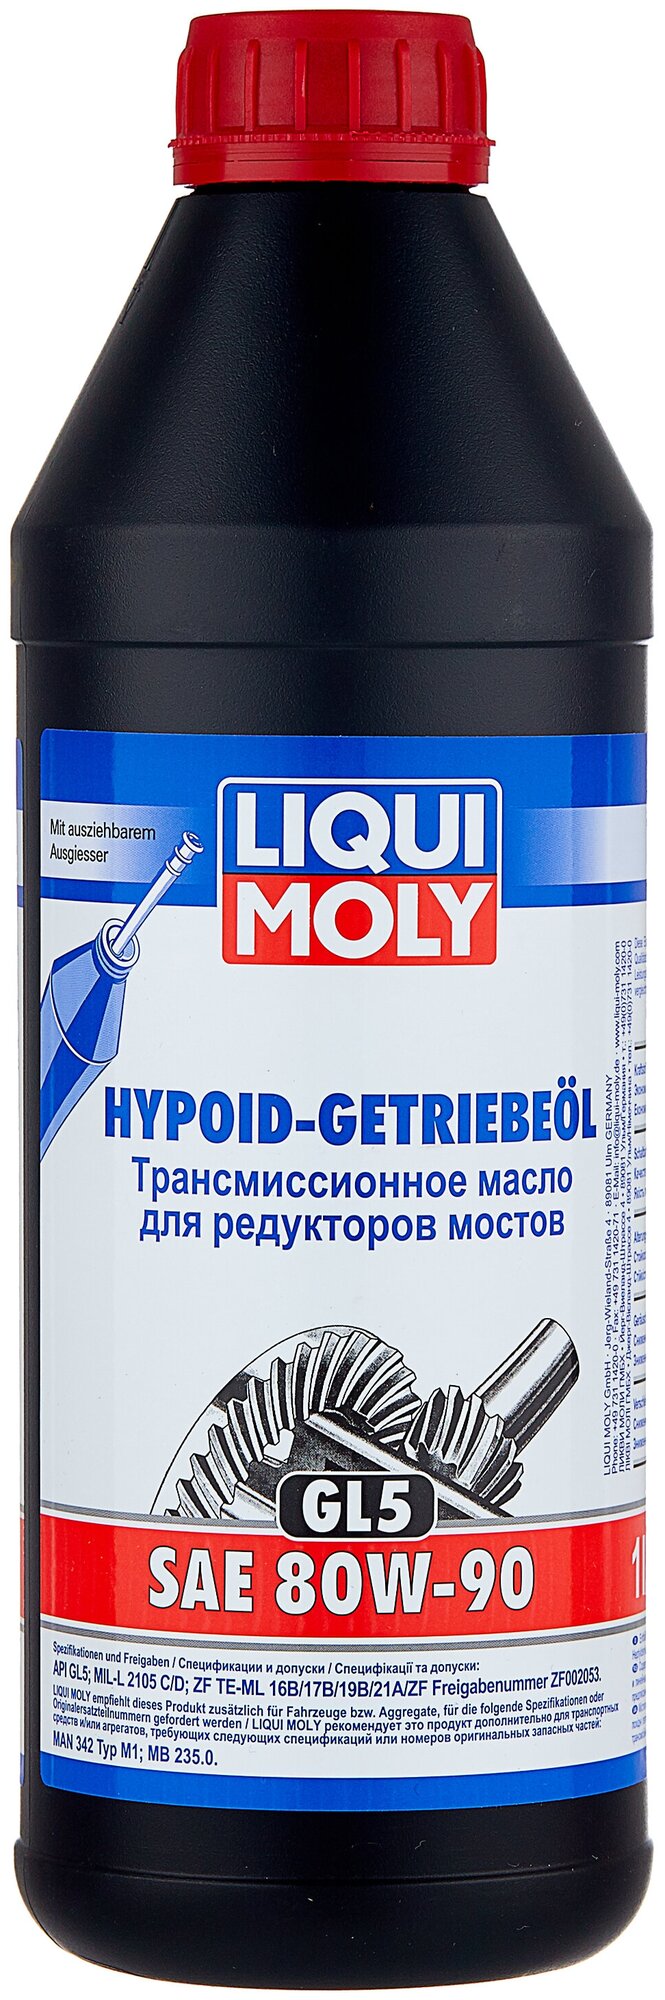 Масло трансмиссионное LIQUI MOLY Hypoid-Getriebeoil, 80W-90, 1 л, 1 шт.